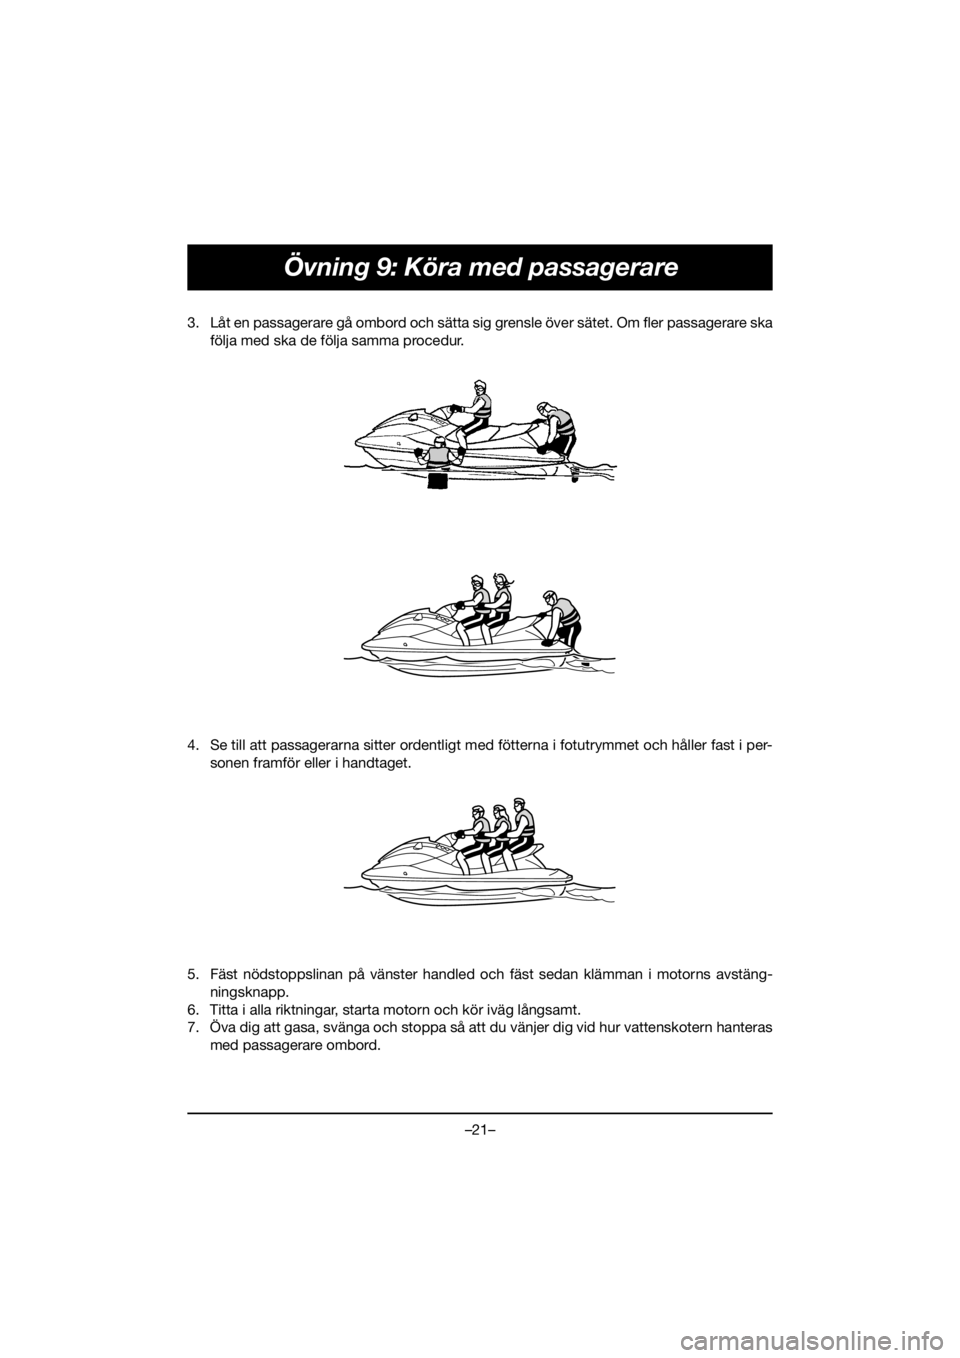 YAMAHA FJR1300 2019  ΟΔΗΓΌΣ ΧΡΉΣΗΣ (in Greek) –21–
Övning 9: Köra med passagerare
3. Låt en passagerare gå ombord och sätta sig grensle över sätet. Om fler passagerare ska
följa med ska de följa samma procedur. 
4. Se till att passag